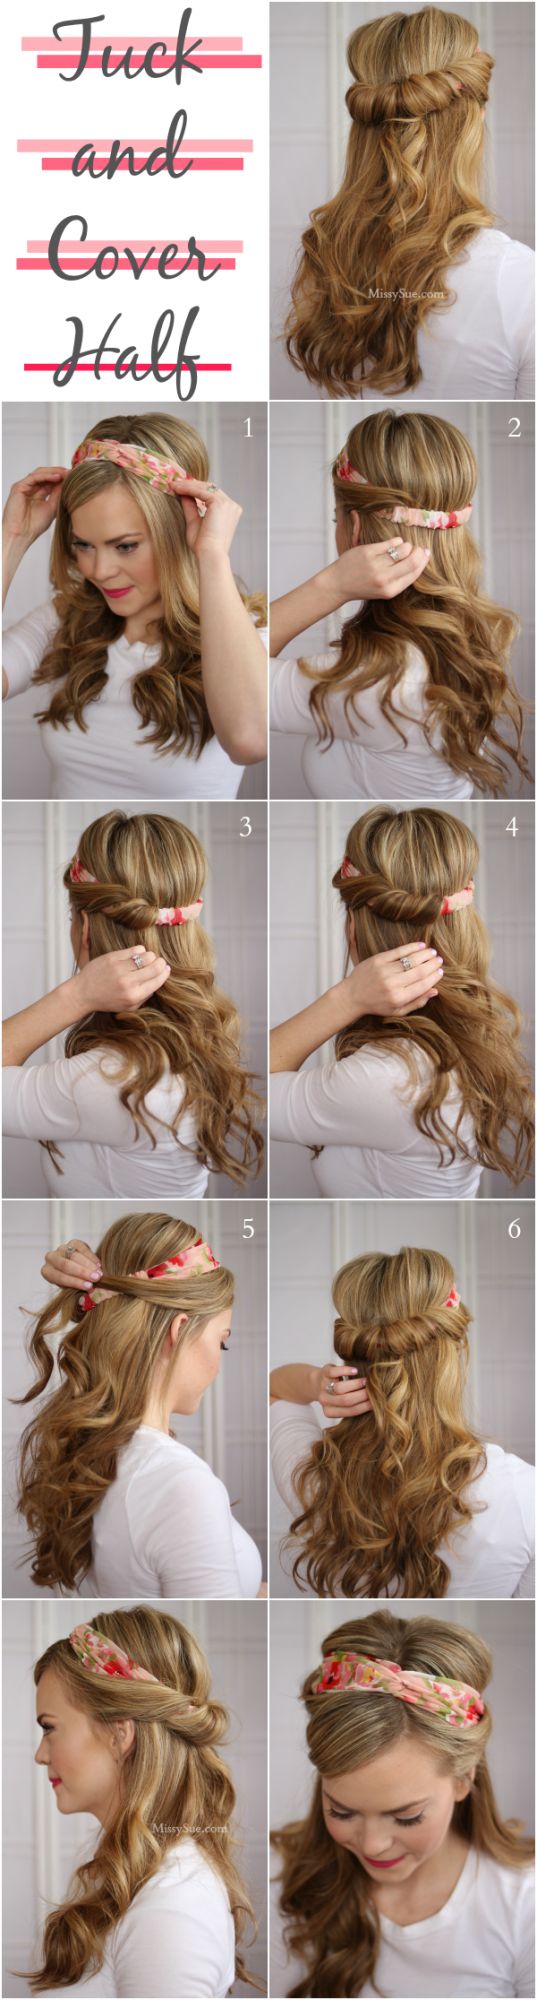 Hair tutorial with a headband